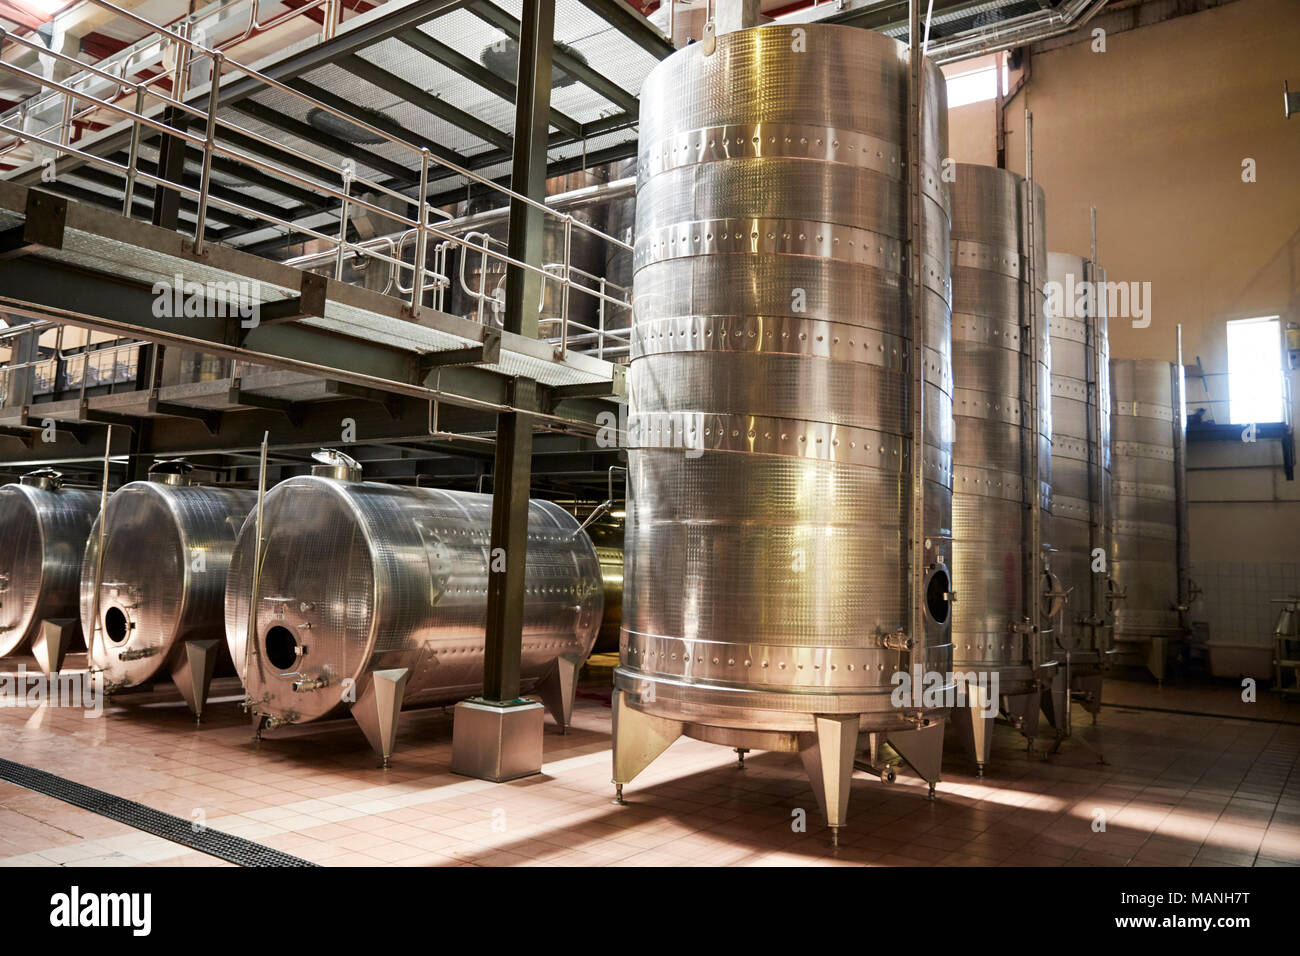 Metallo attrezzature di vinificazione in un moderno impianto di vinificazione Foto Stock